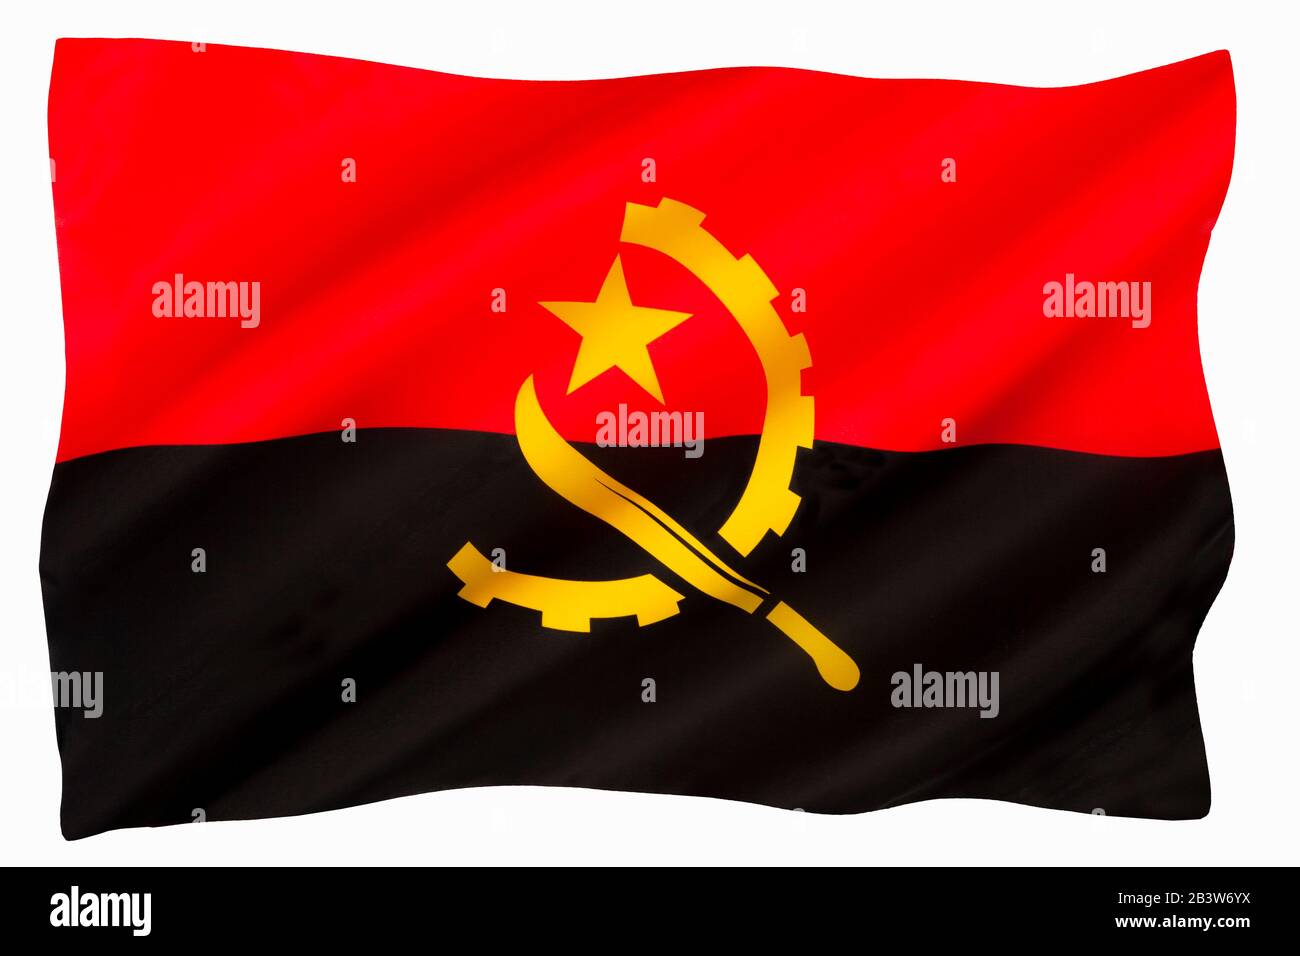 Le drapeau national de l'Angola - Adopté lorsque l'Angola a obtenu son indépendance du Portugal le 11 novembre 1975. Banque D'Images